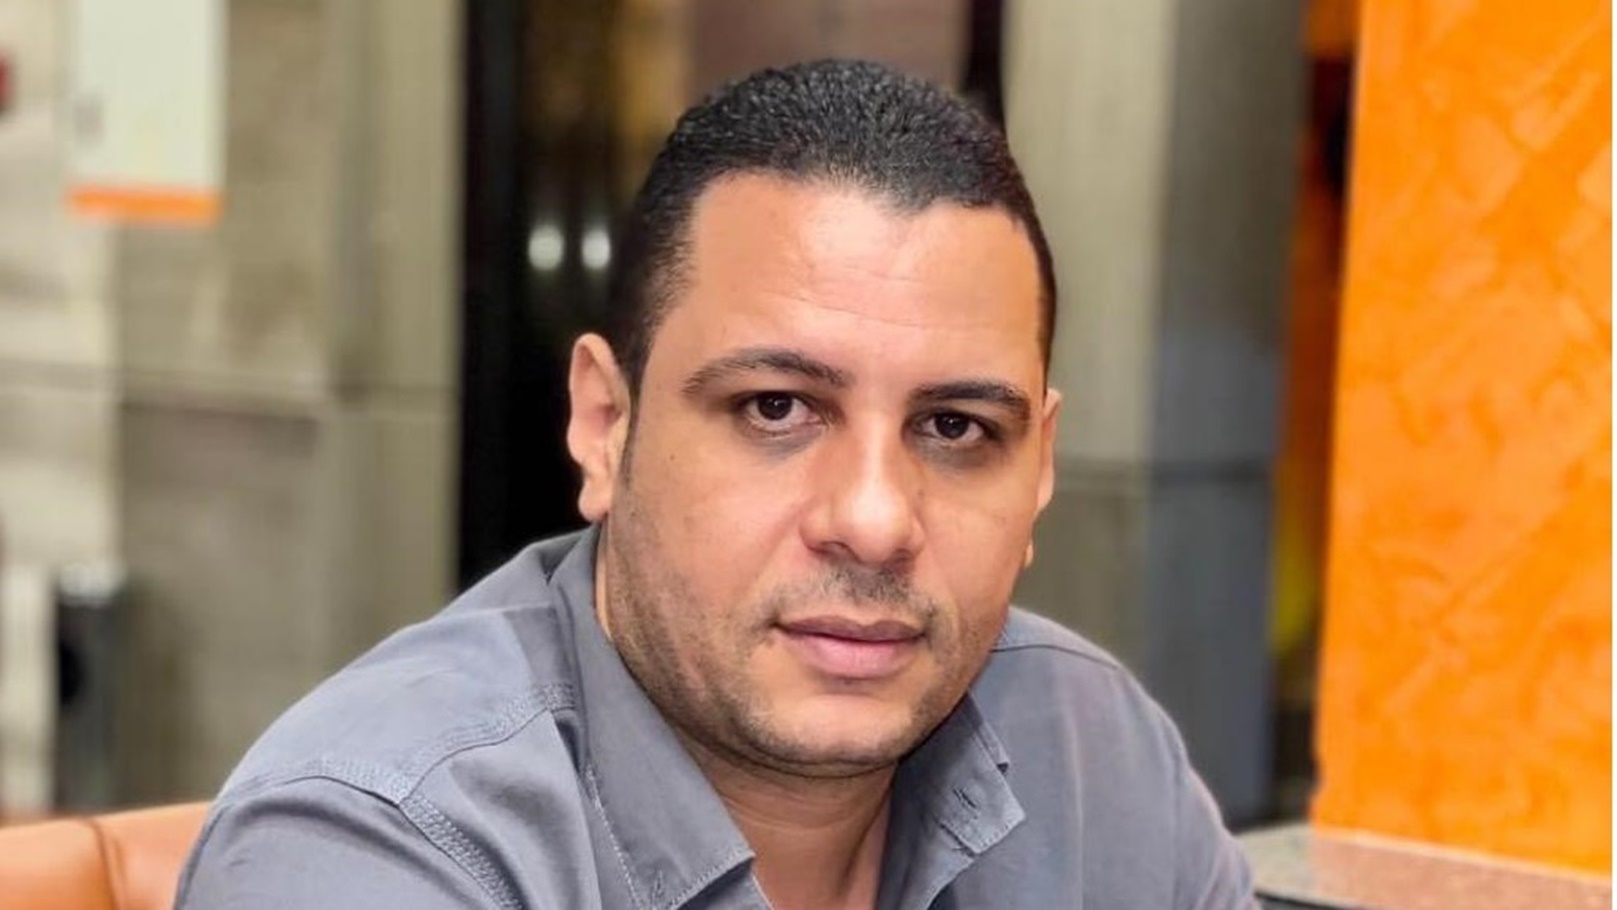 إبراهيم بشاري رئيس مجلس إدارة شركة البشاري للصناعات الغذائية والتصدير